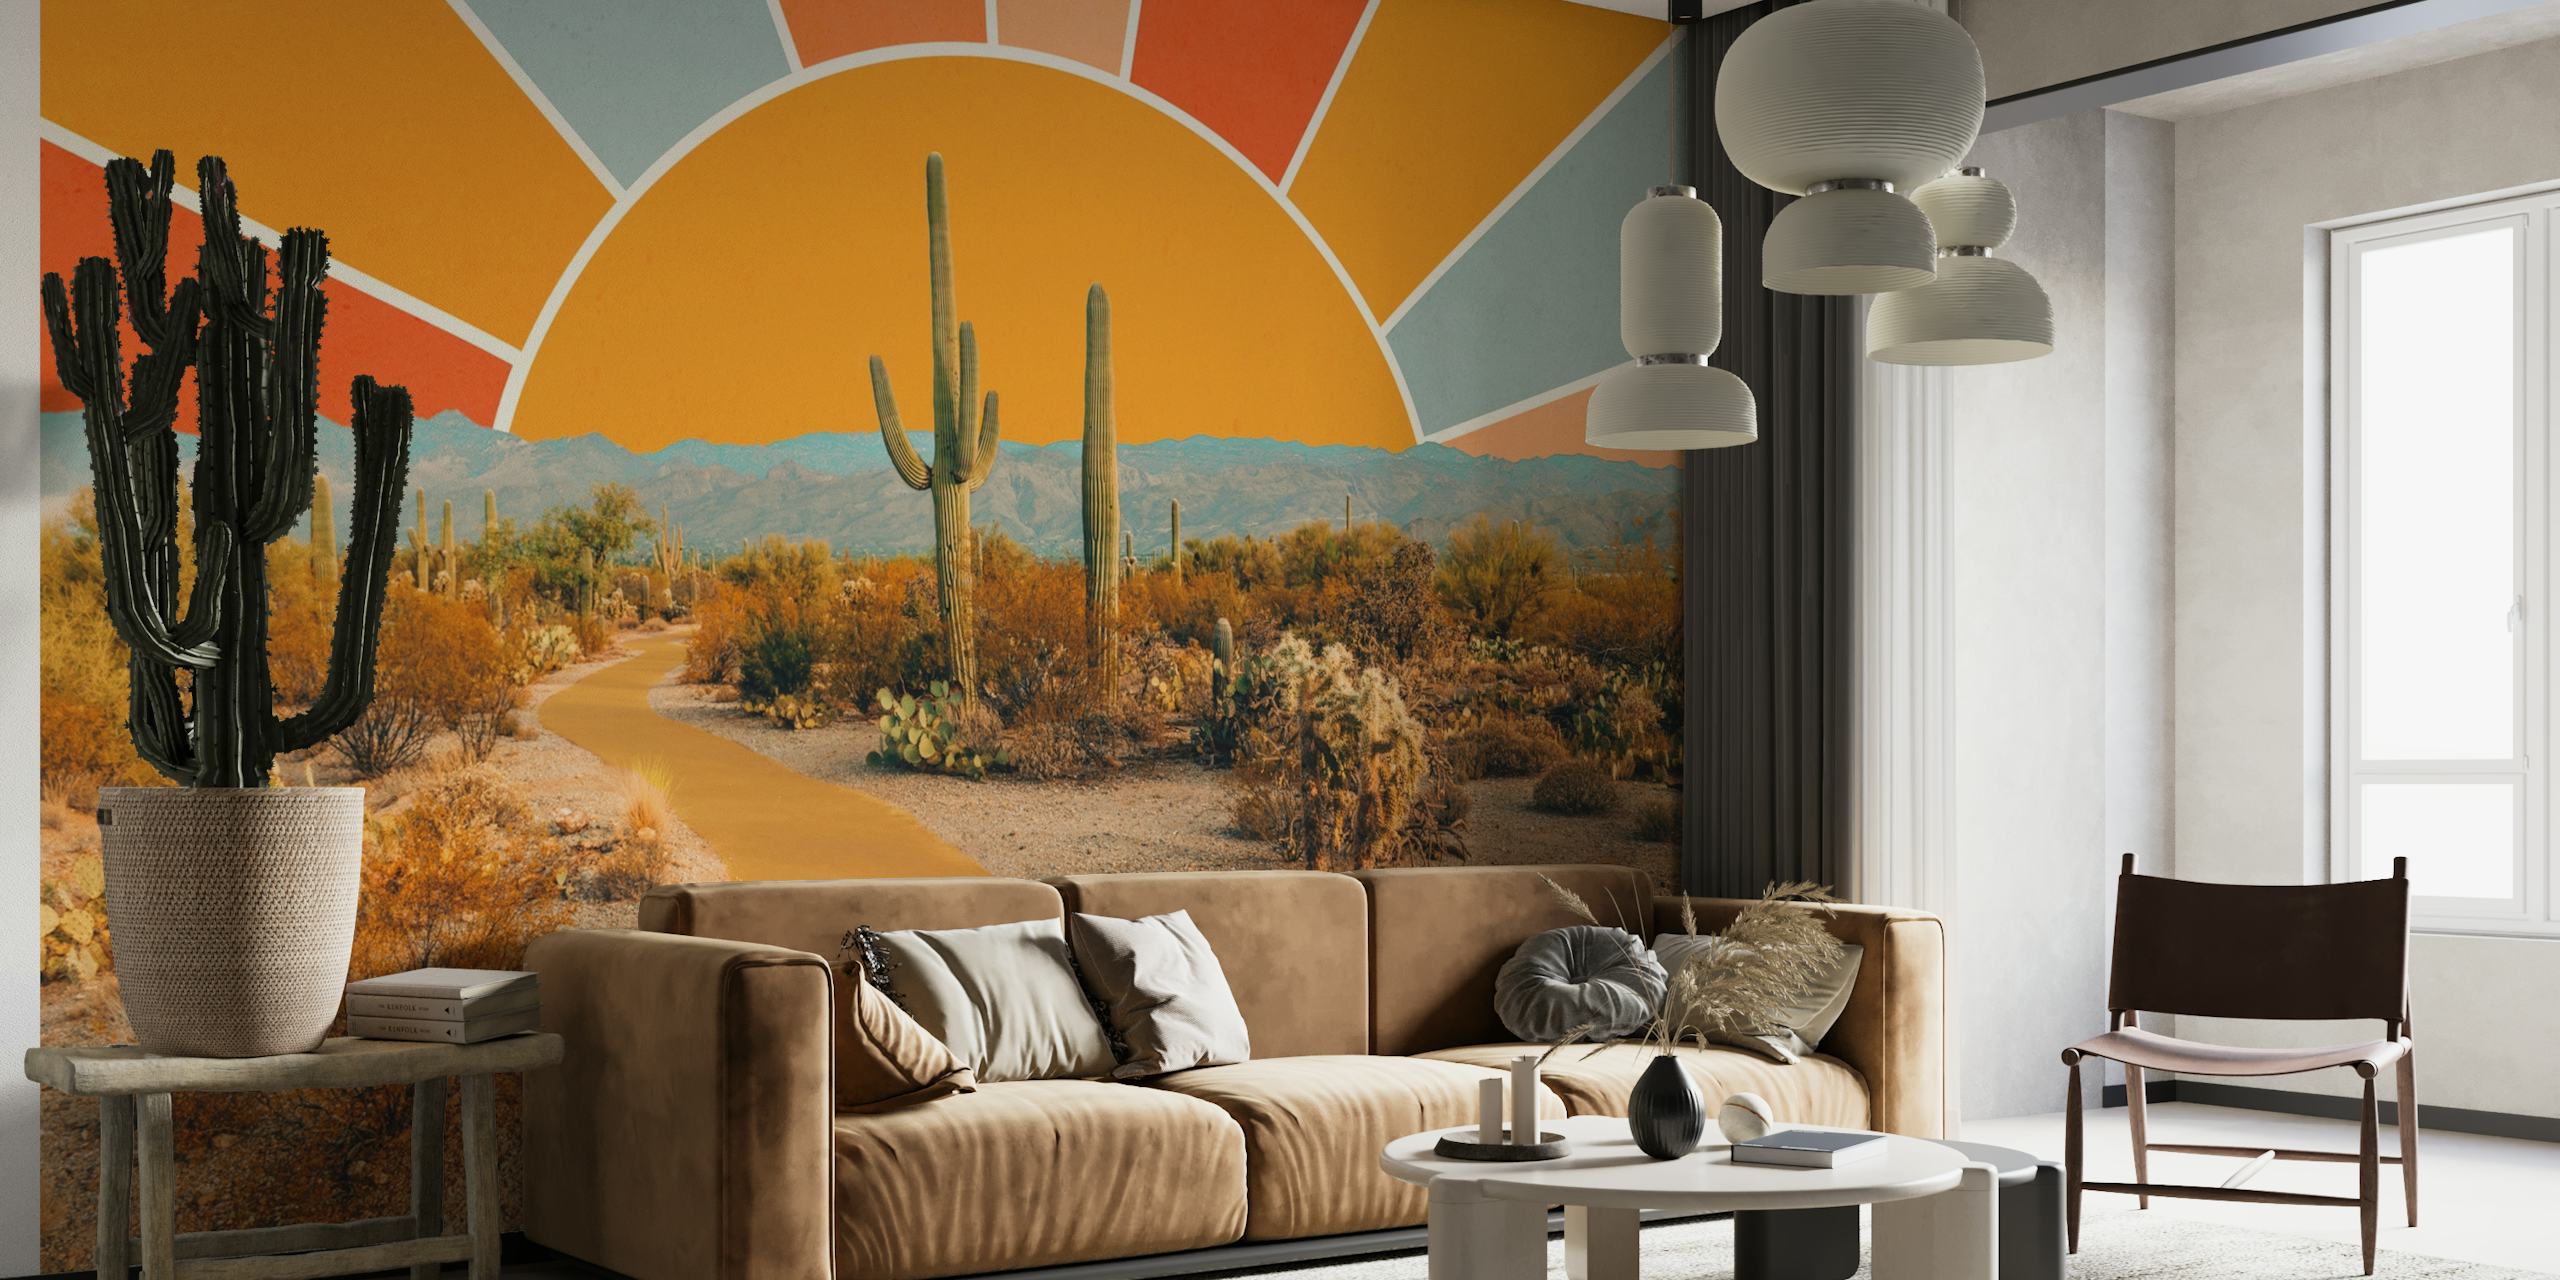 Umjetnička zidna slika s scenom pustinje s kaktusima i toplim dizajnom sunčevih zraka